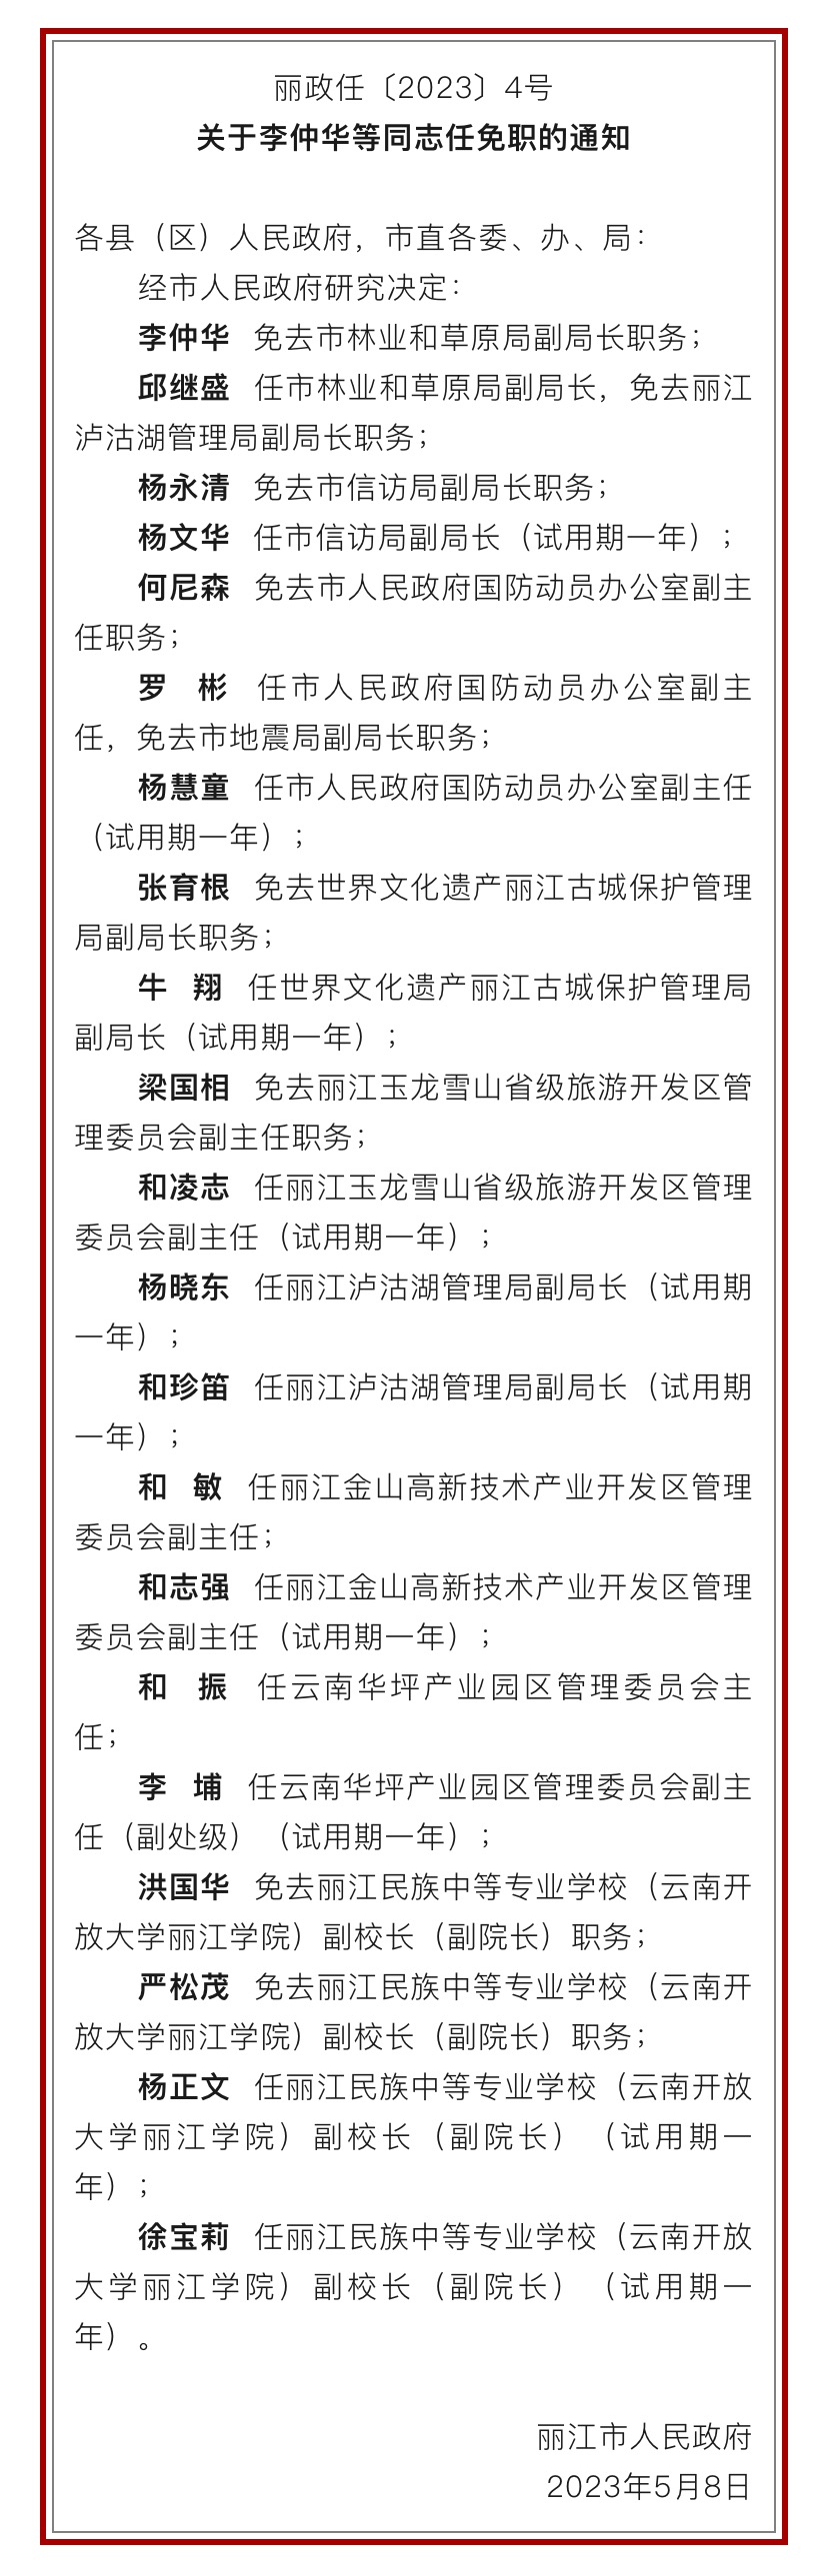 丽江市政府发布一批人事任免职通知 (2).jpg